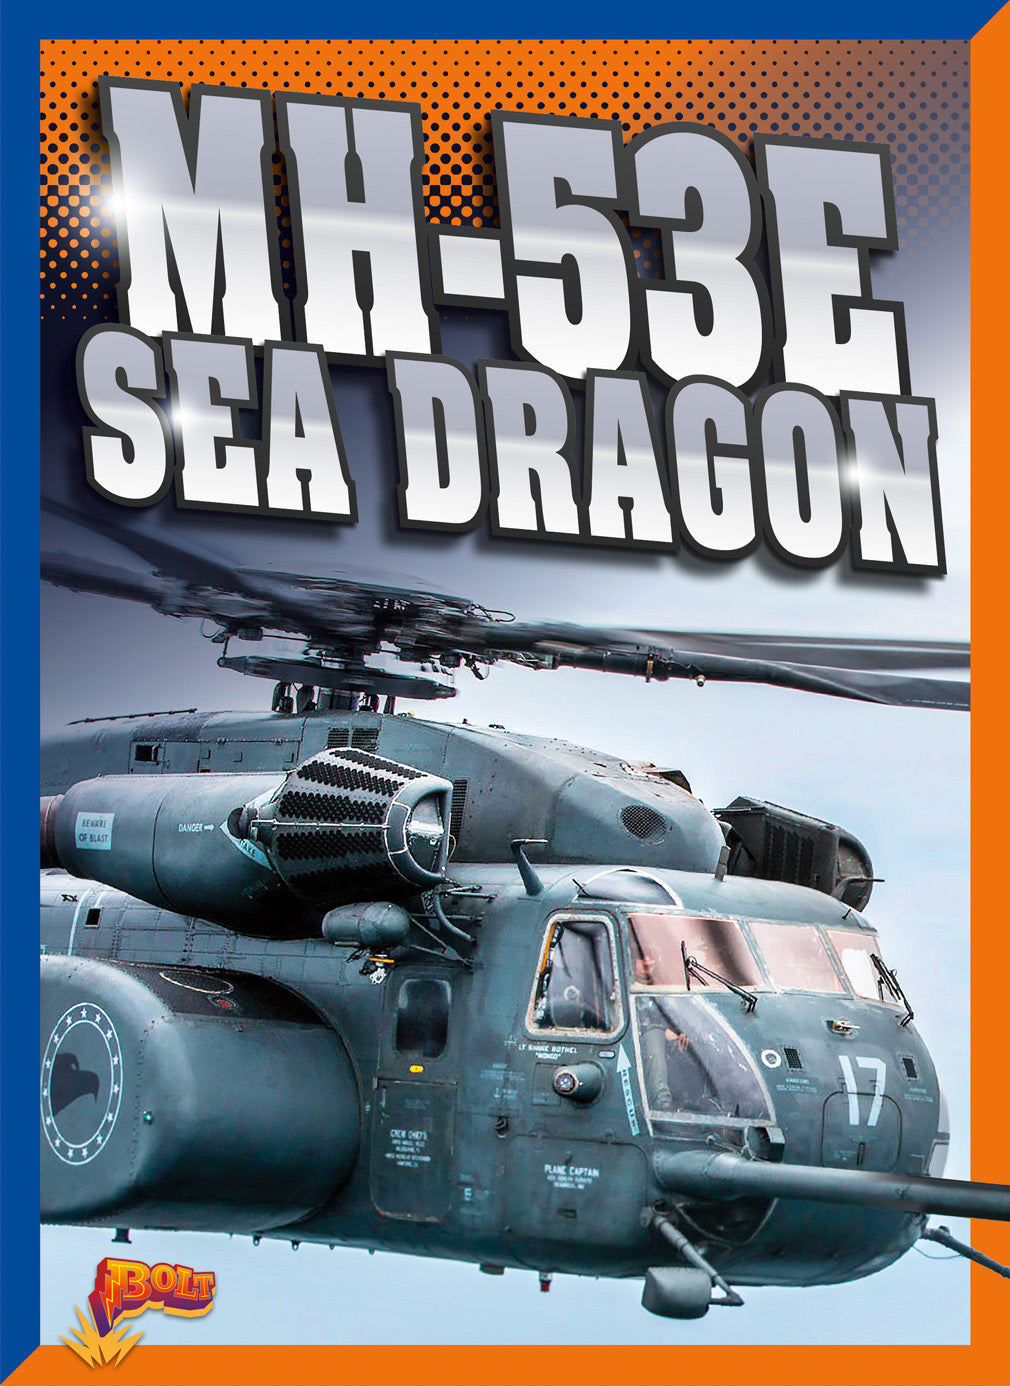 Air Power: MH53E Sea Dragon